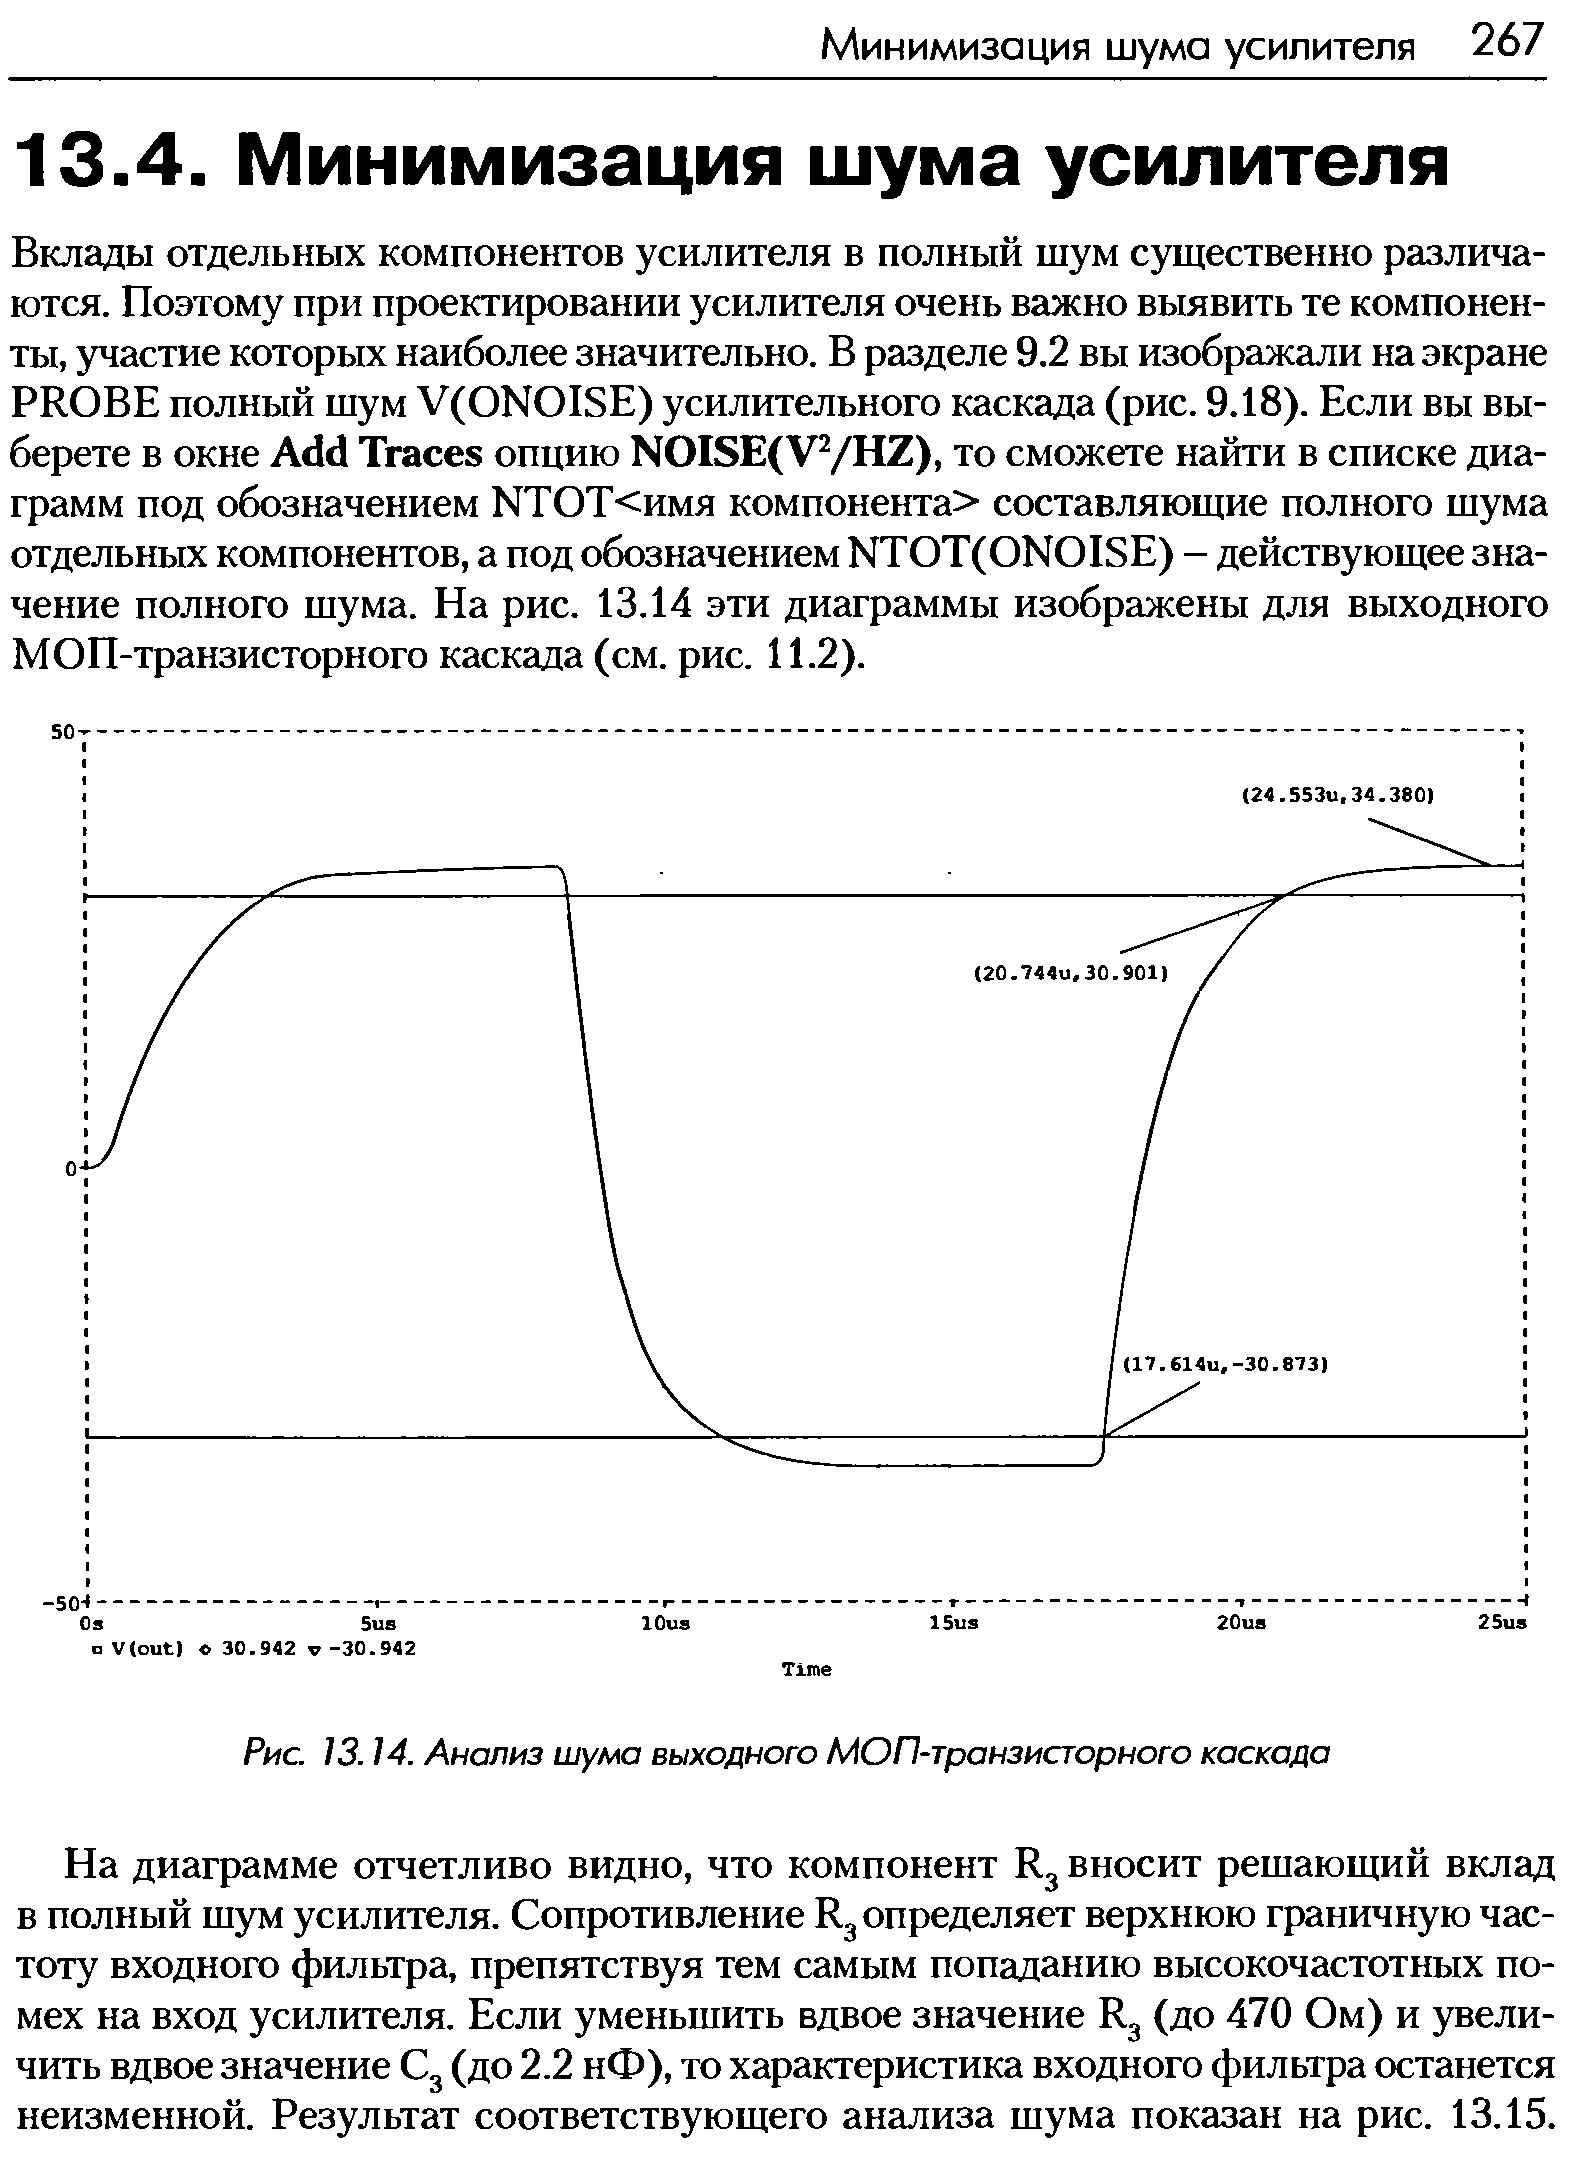 На диаграмме отчетливо видно, что компонент Ед вносит решающий вклад в полный шум усилителя. Сопротивление Ед определяет верхнюю граничную частоту входного фильтра, препятствуя тем самым попаданию высокочастотных помех на вход усилителя. Если уменьшить вдвое значение Ед (до 470 Ом) и увеличить вдвое значение Сд (до 2.2 нФ), то характеристика входного фильтра останется неизменной. Результат соответствующего анализа шума показан на рис. 13.15.
